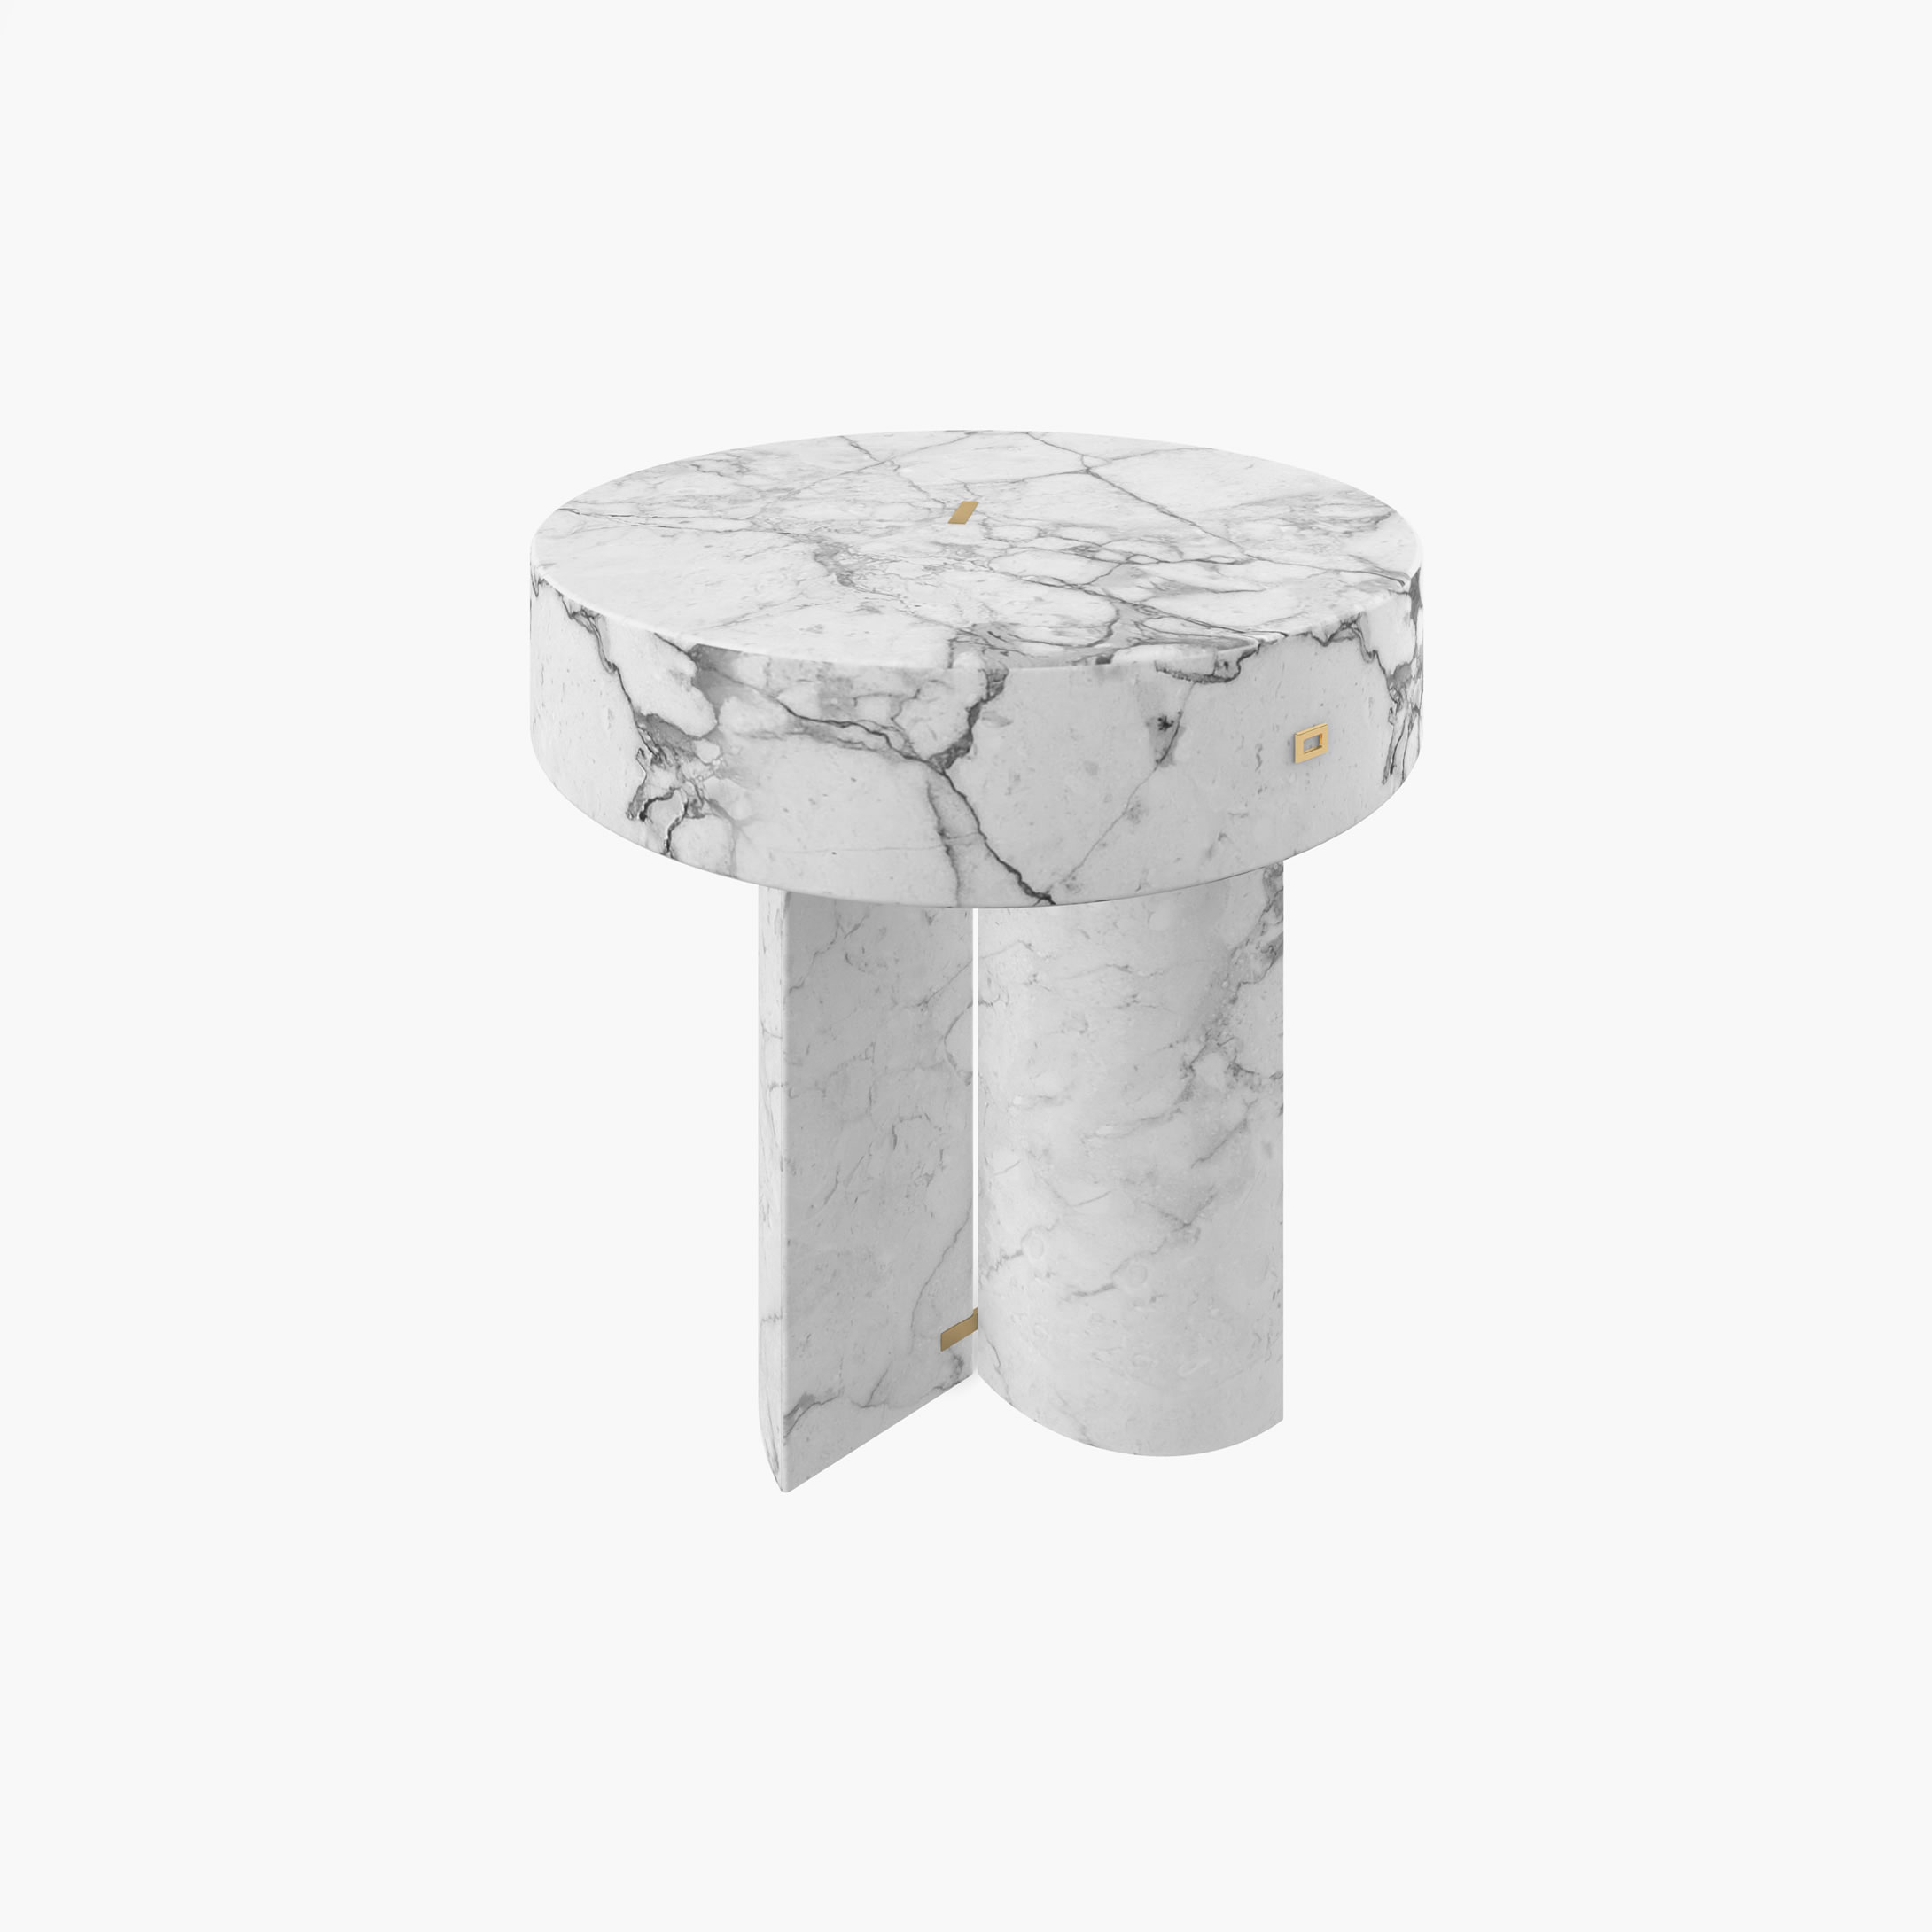 Beistelltisch rund Zylinder Quader Prisma Weiss Arabescato Marmor tolle Wohnzimmer Designer Beistelltische FS 129 1 FELIX SCHWAKE